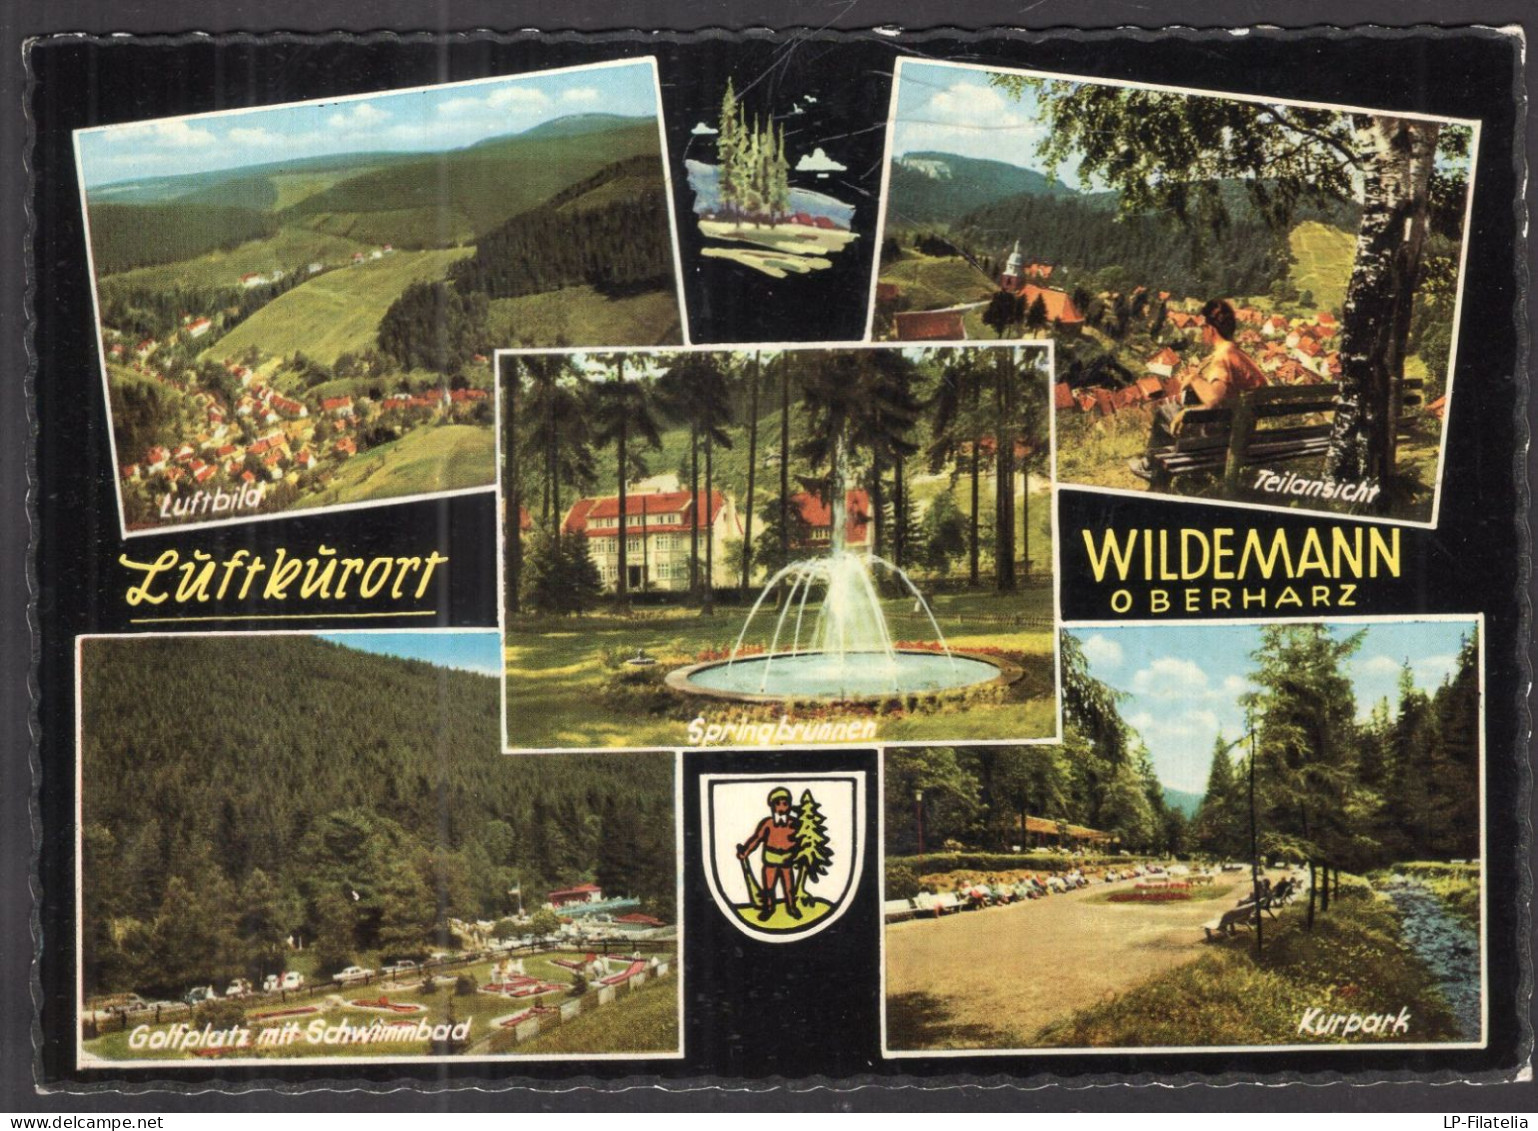 Deustchland - 1975 - Luftkurort Wildemann Oberharz - Wildemann